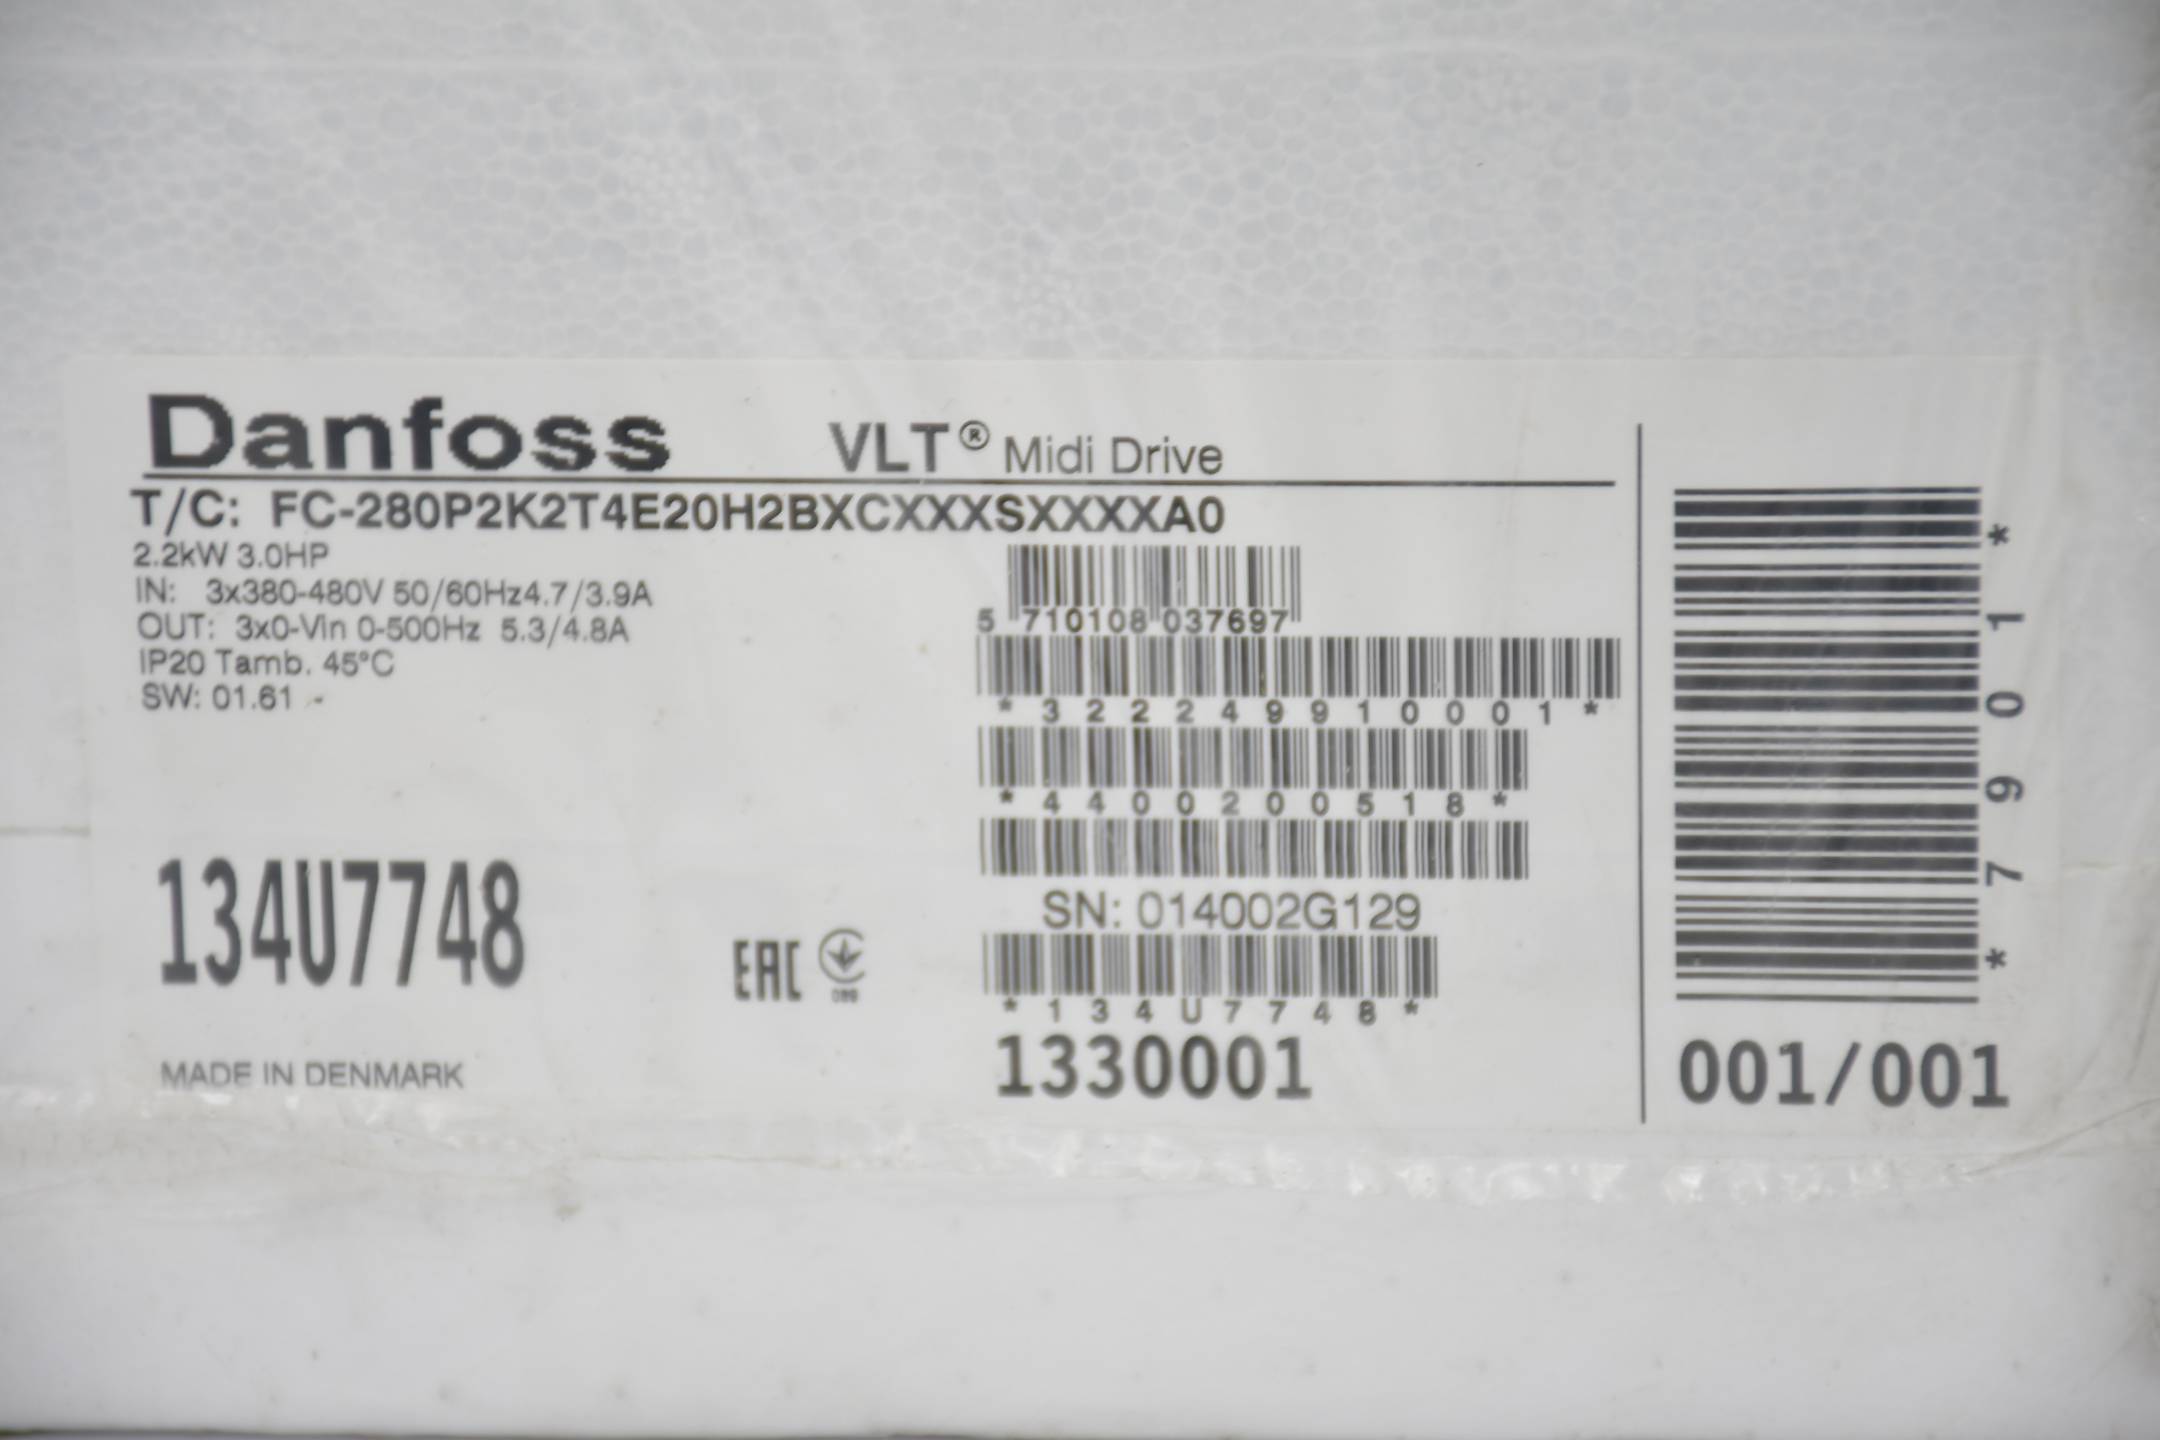 Danfoss VLT® Midi Drive FC 280 FC-280P2K2T4E20H2BXCXXXSXXXXA0 ( 134U7748 )